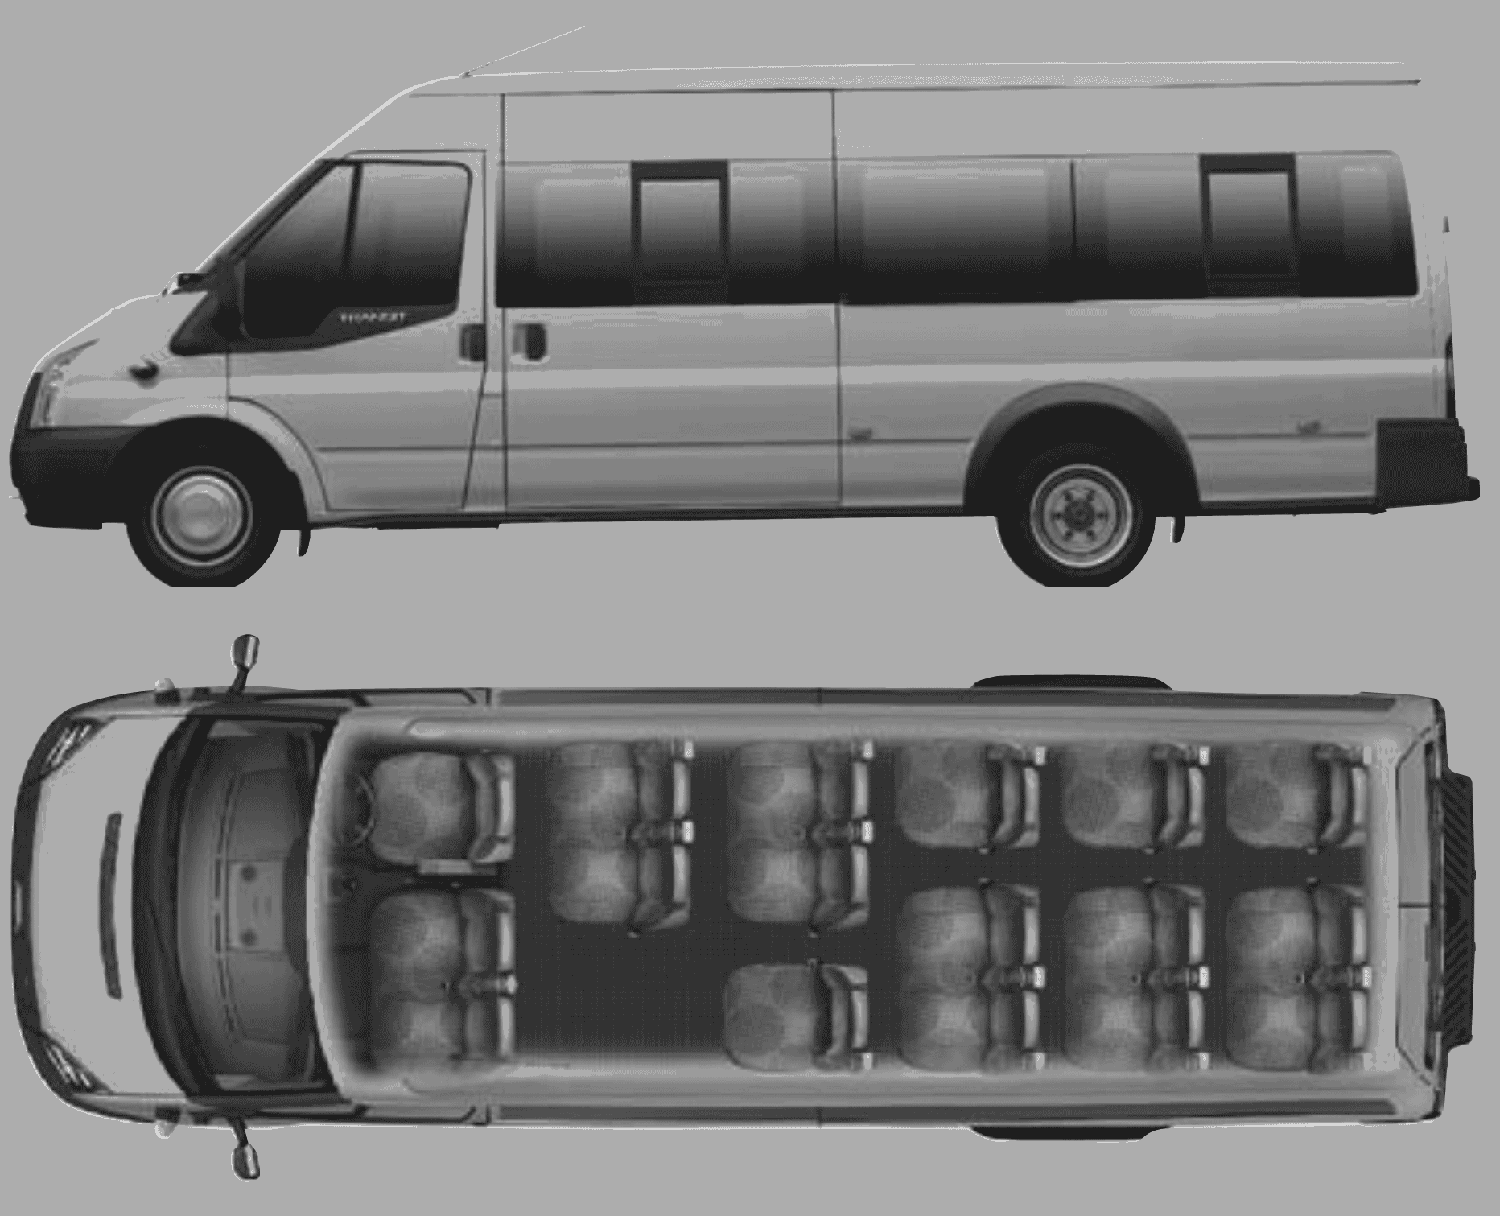 Ford transit 17 seat minibus length